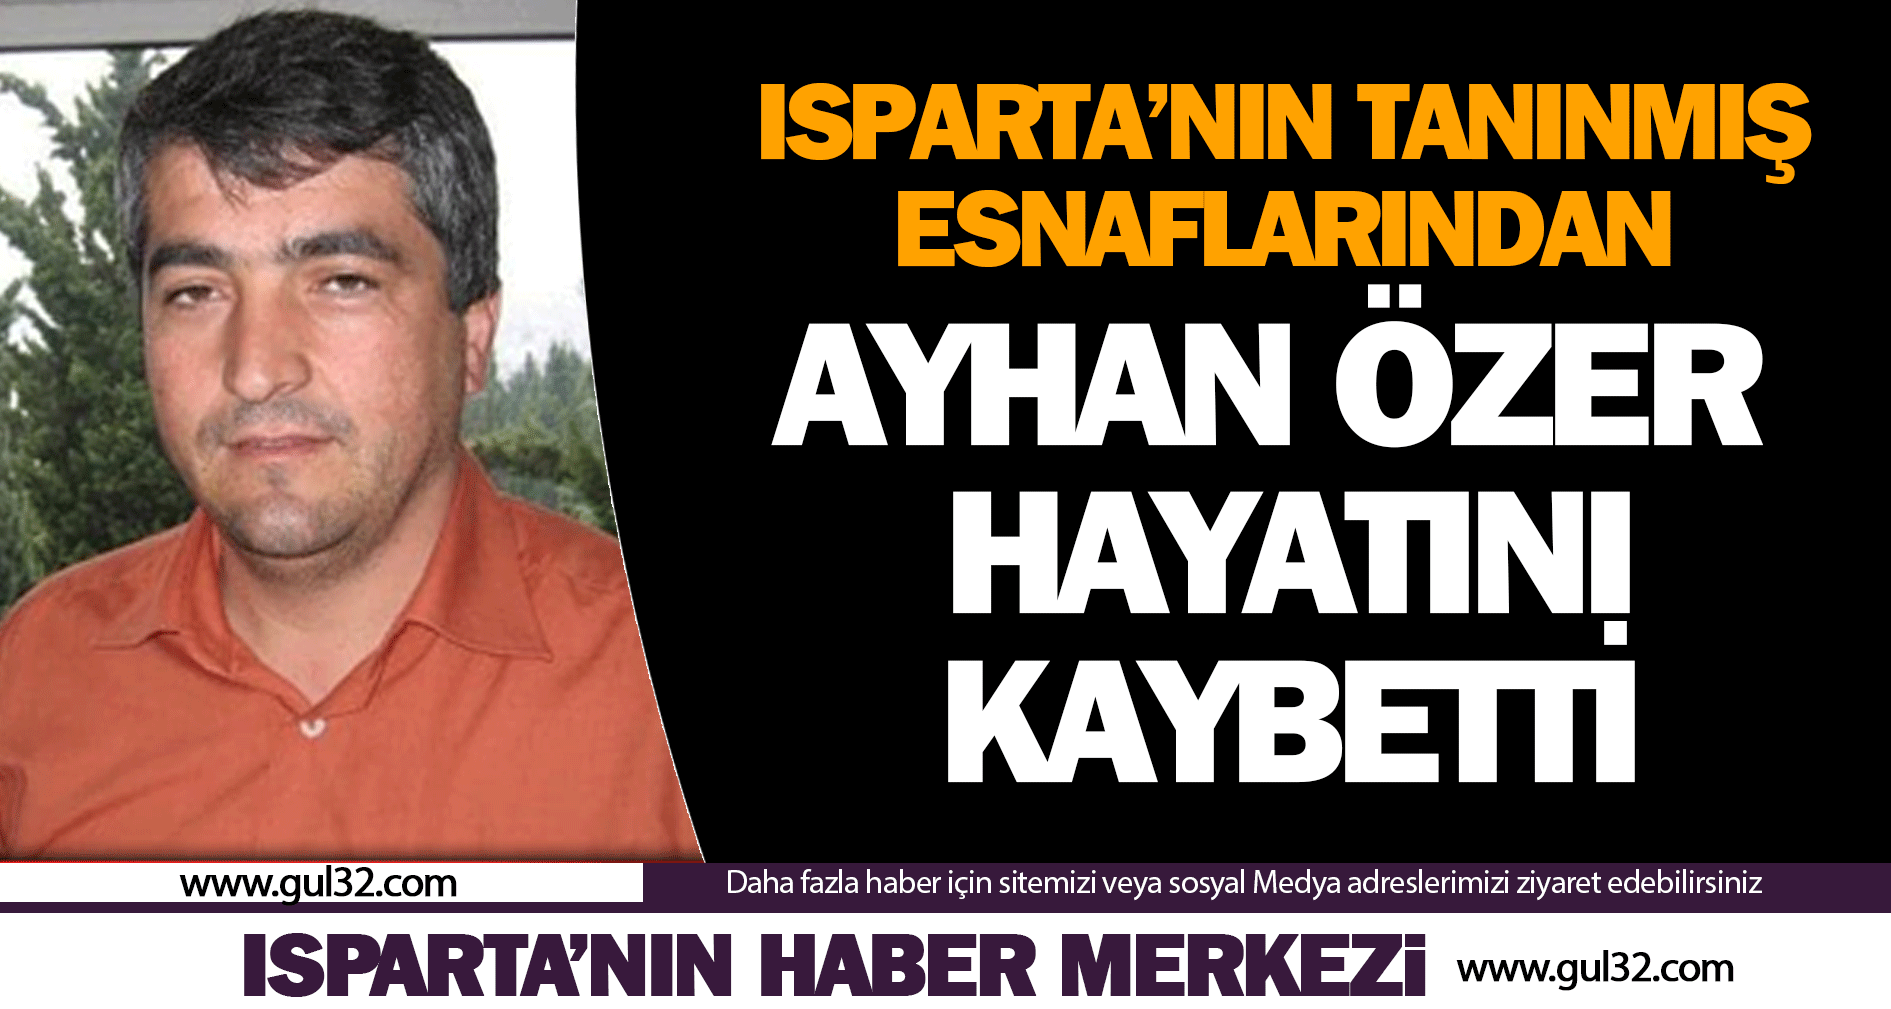 Ayhan Özer hayatını kaybetti